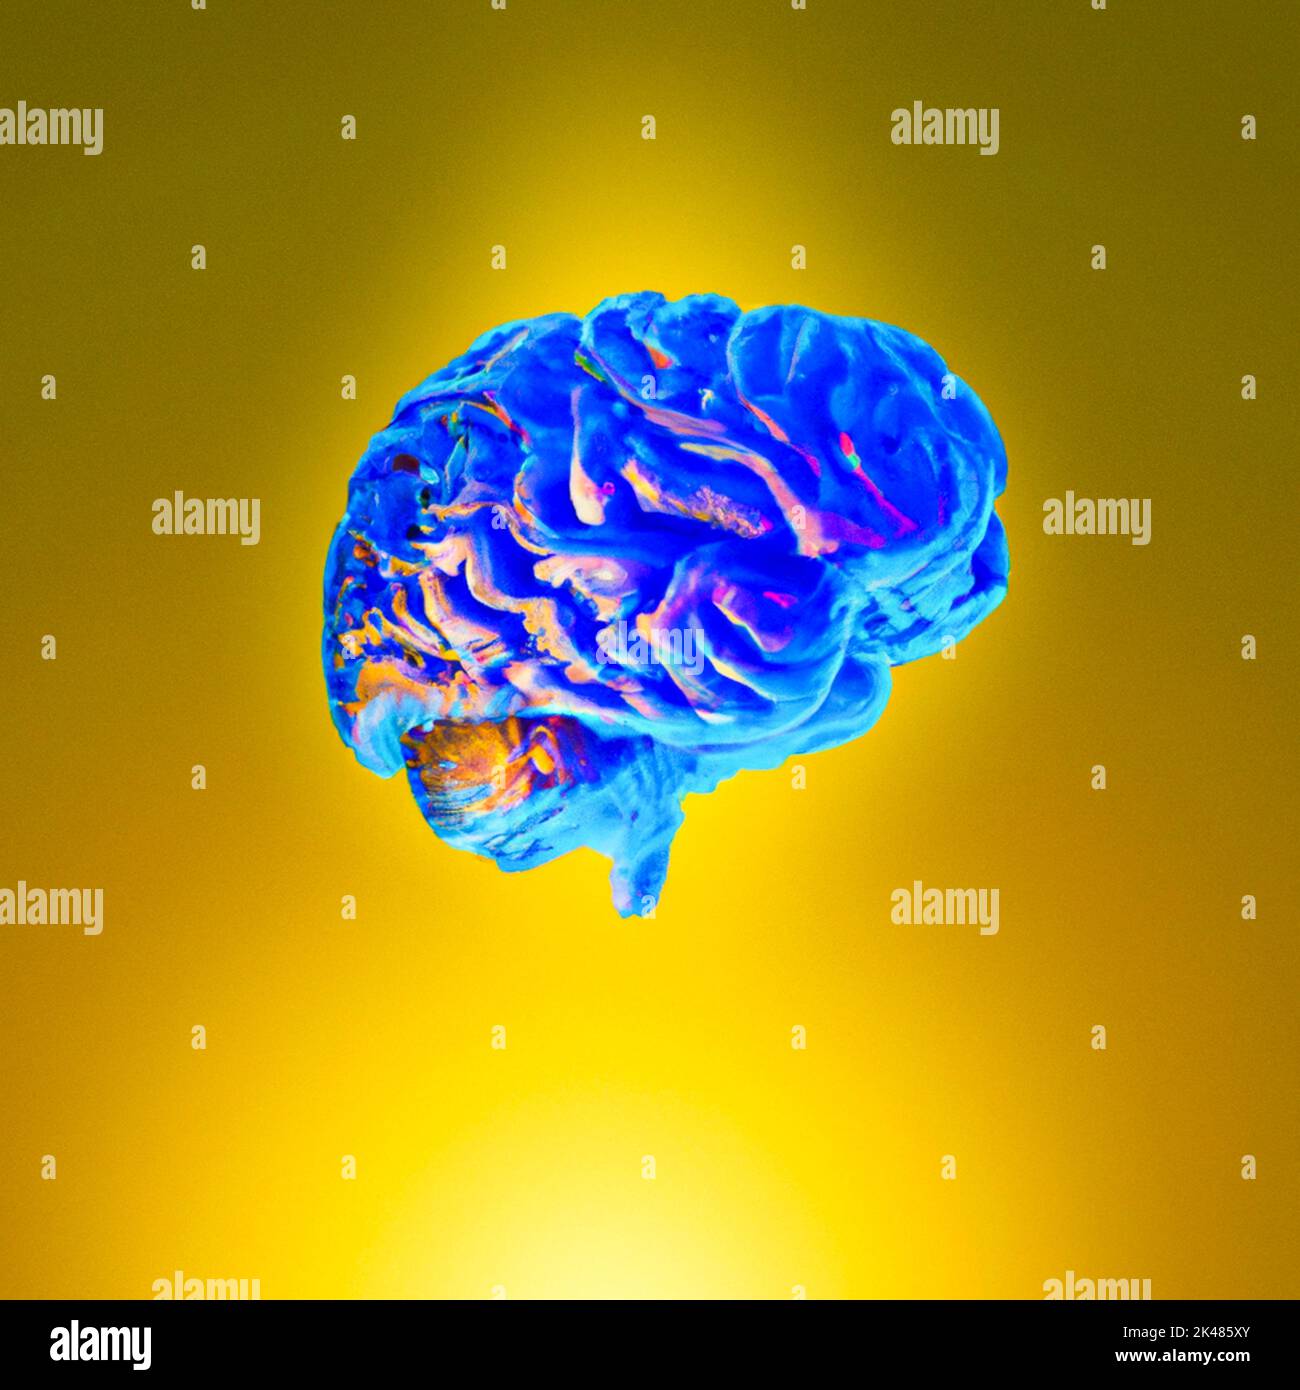 Frankreich, Paris am 26/09/2022. Digitale Illustration eines Gehirns. Bild erstellt mit einem künstlichen Intelligenz-Programm von Martin Bertrand. Frankreich, Paris Stockfoto